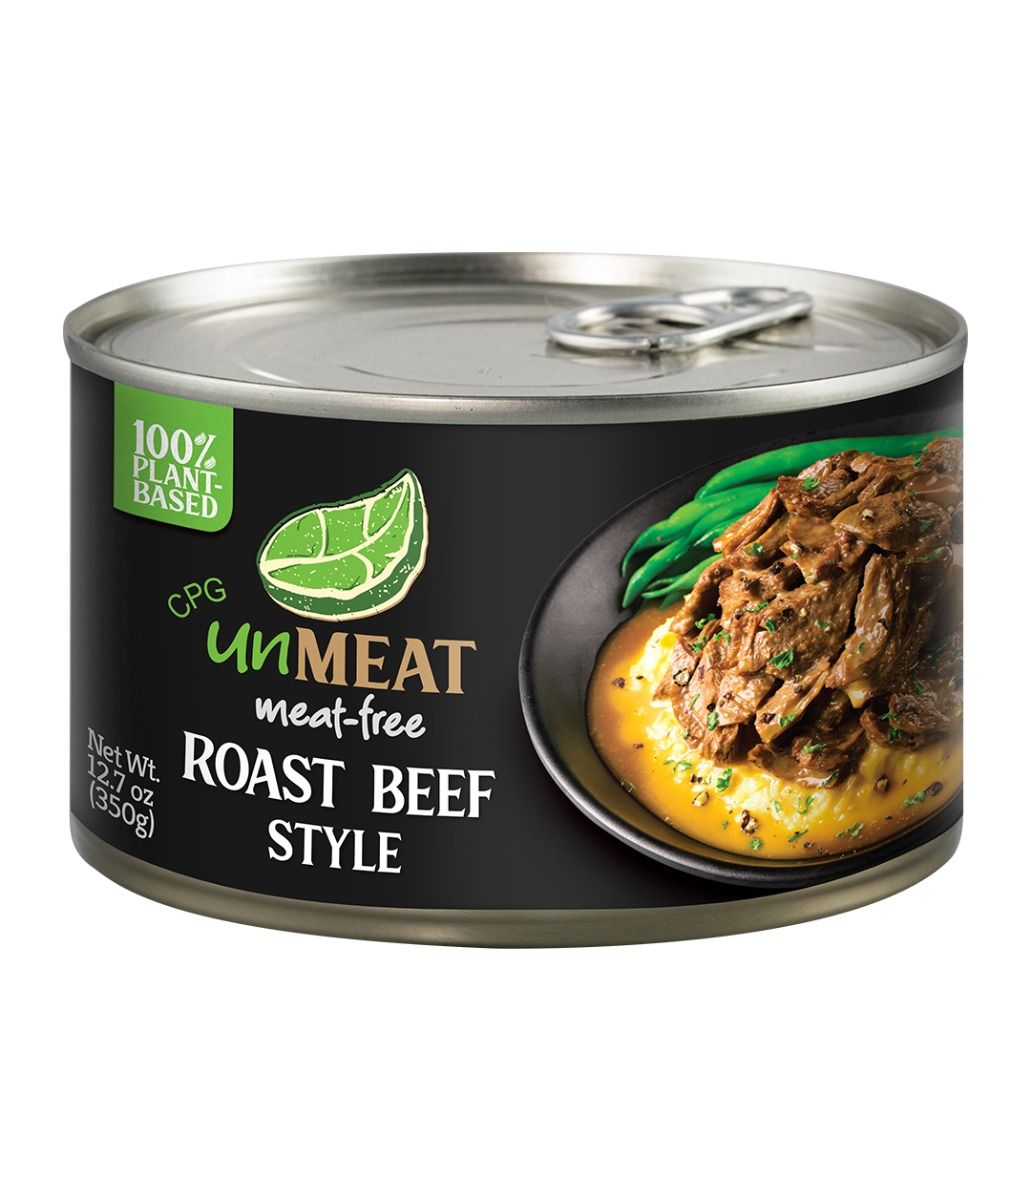 UNMEAT Roast Beef Style - 12.7 oz.